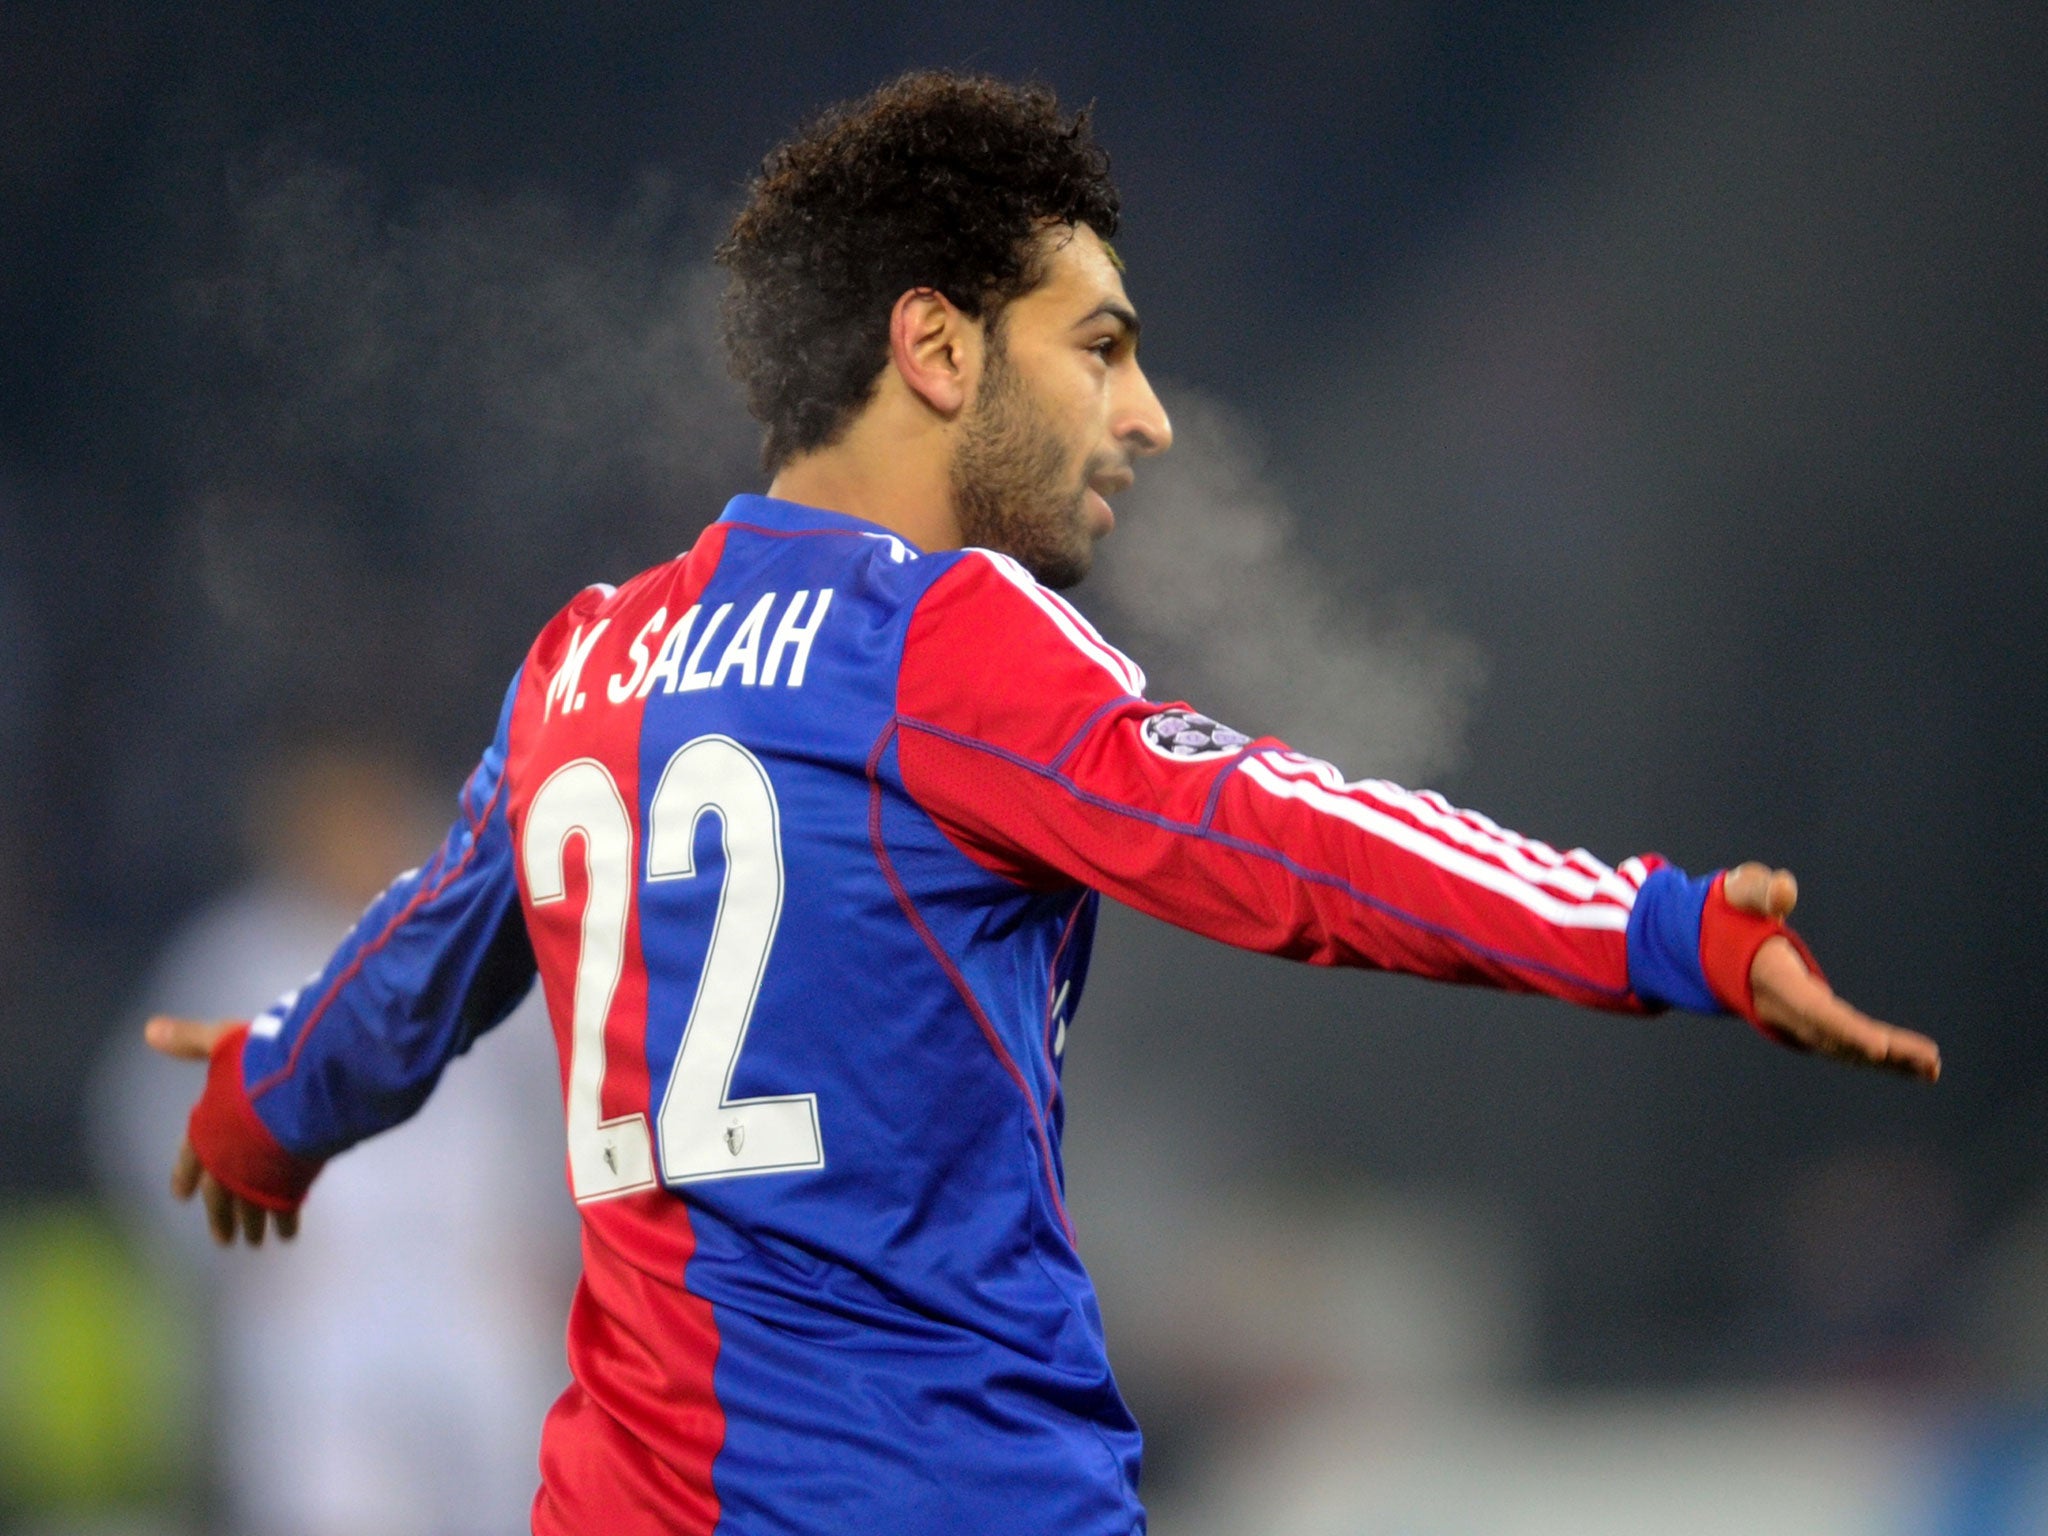 Basel's Egyptian midfielder Mohamed Salah